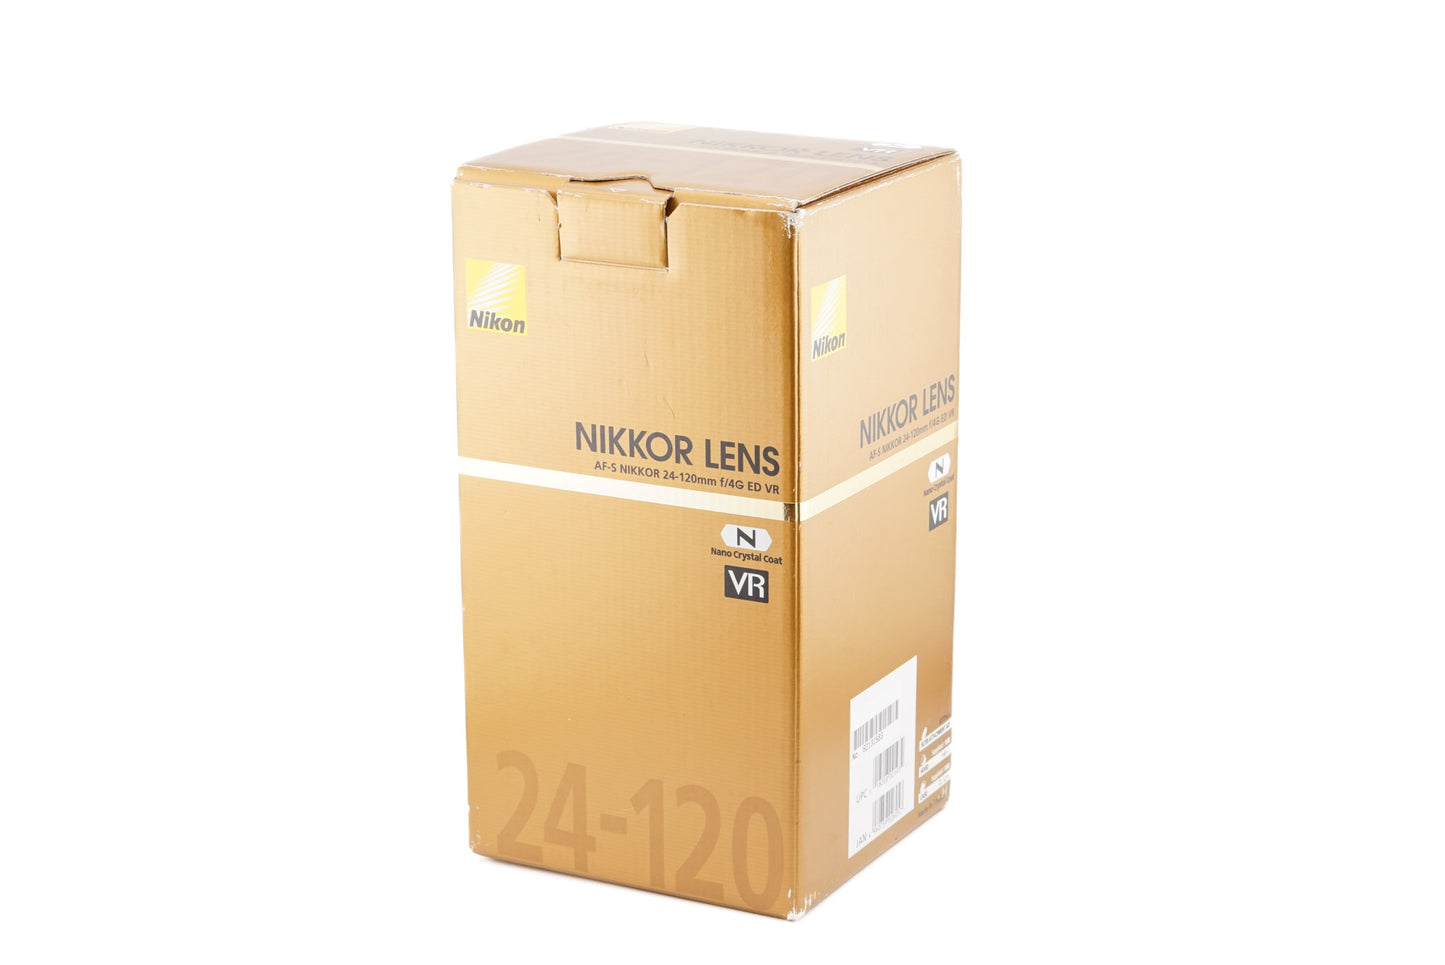 Nikon 24-120mm f4 G ED N VR AF-S Nikkor